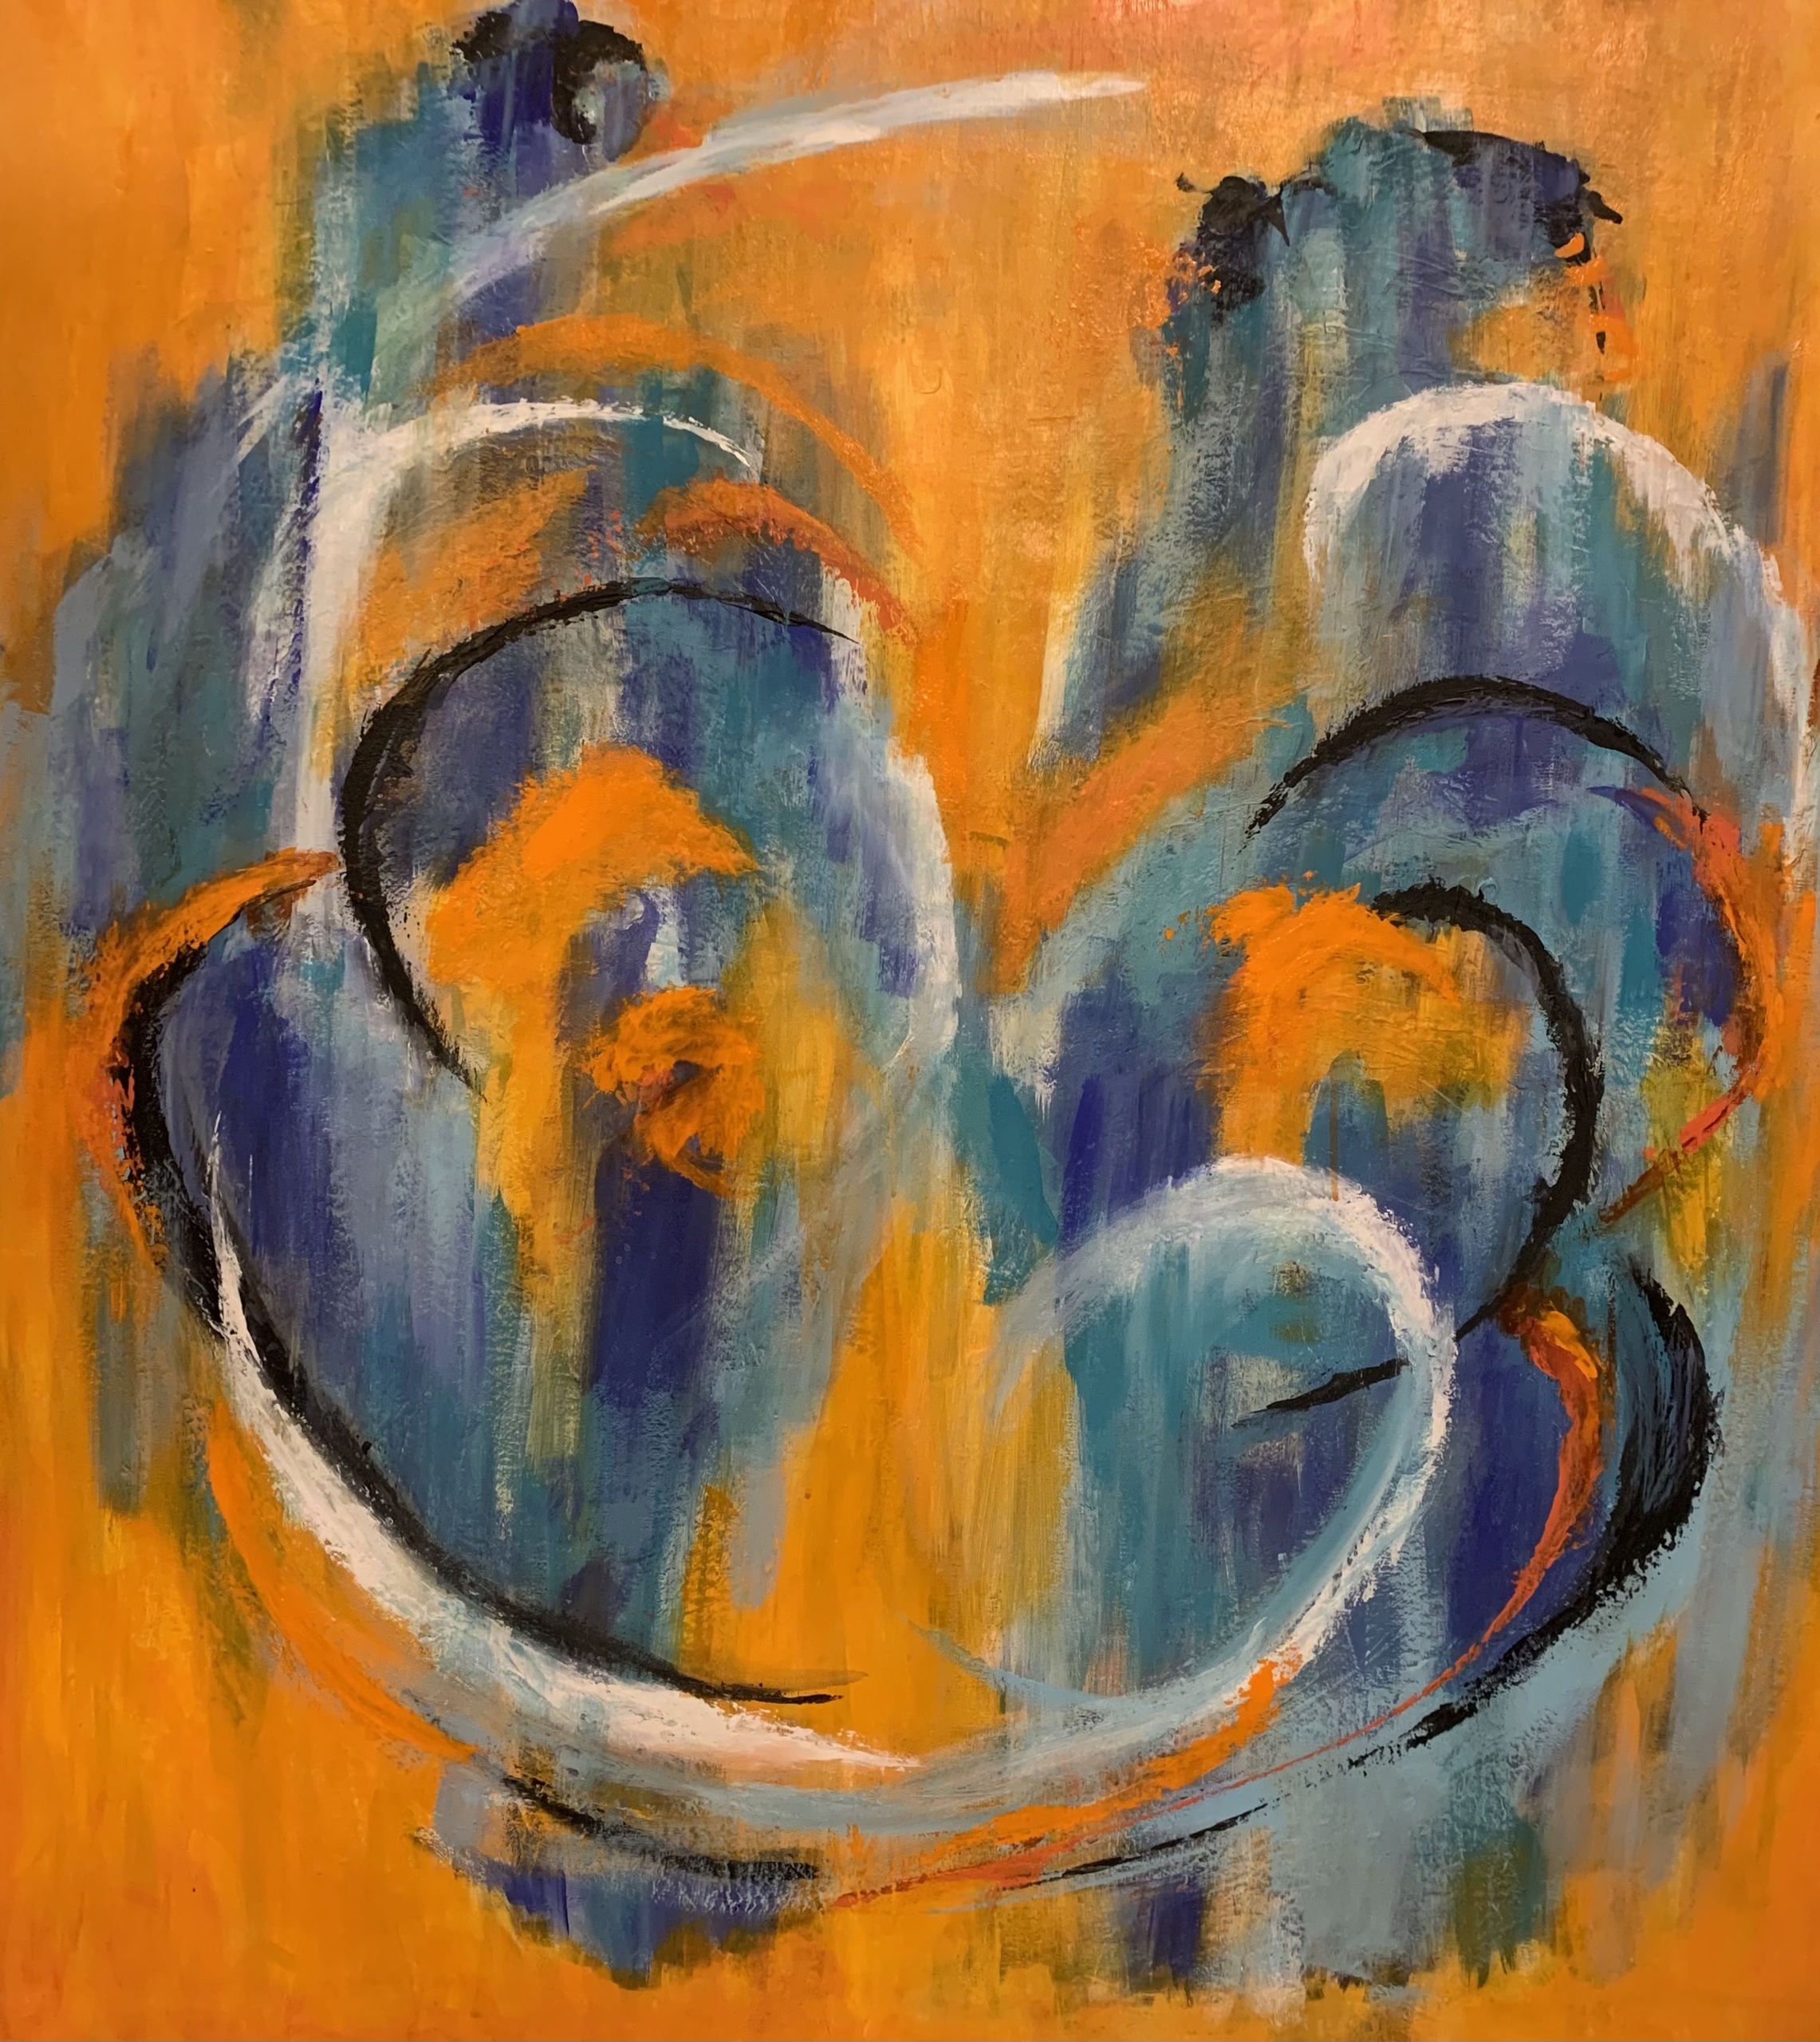 Abstrakt smukt harmonisk maleri i blålige nuancer på orange baggrund, hvor man aner to figurer i bevægelse.